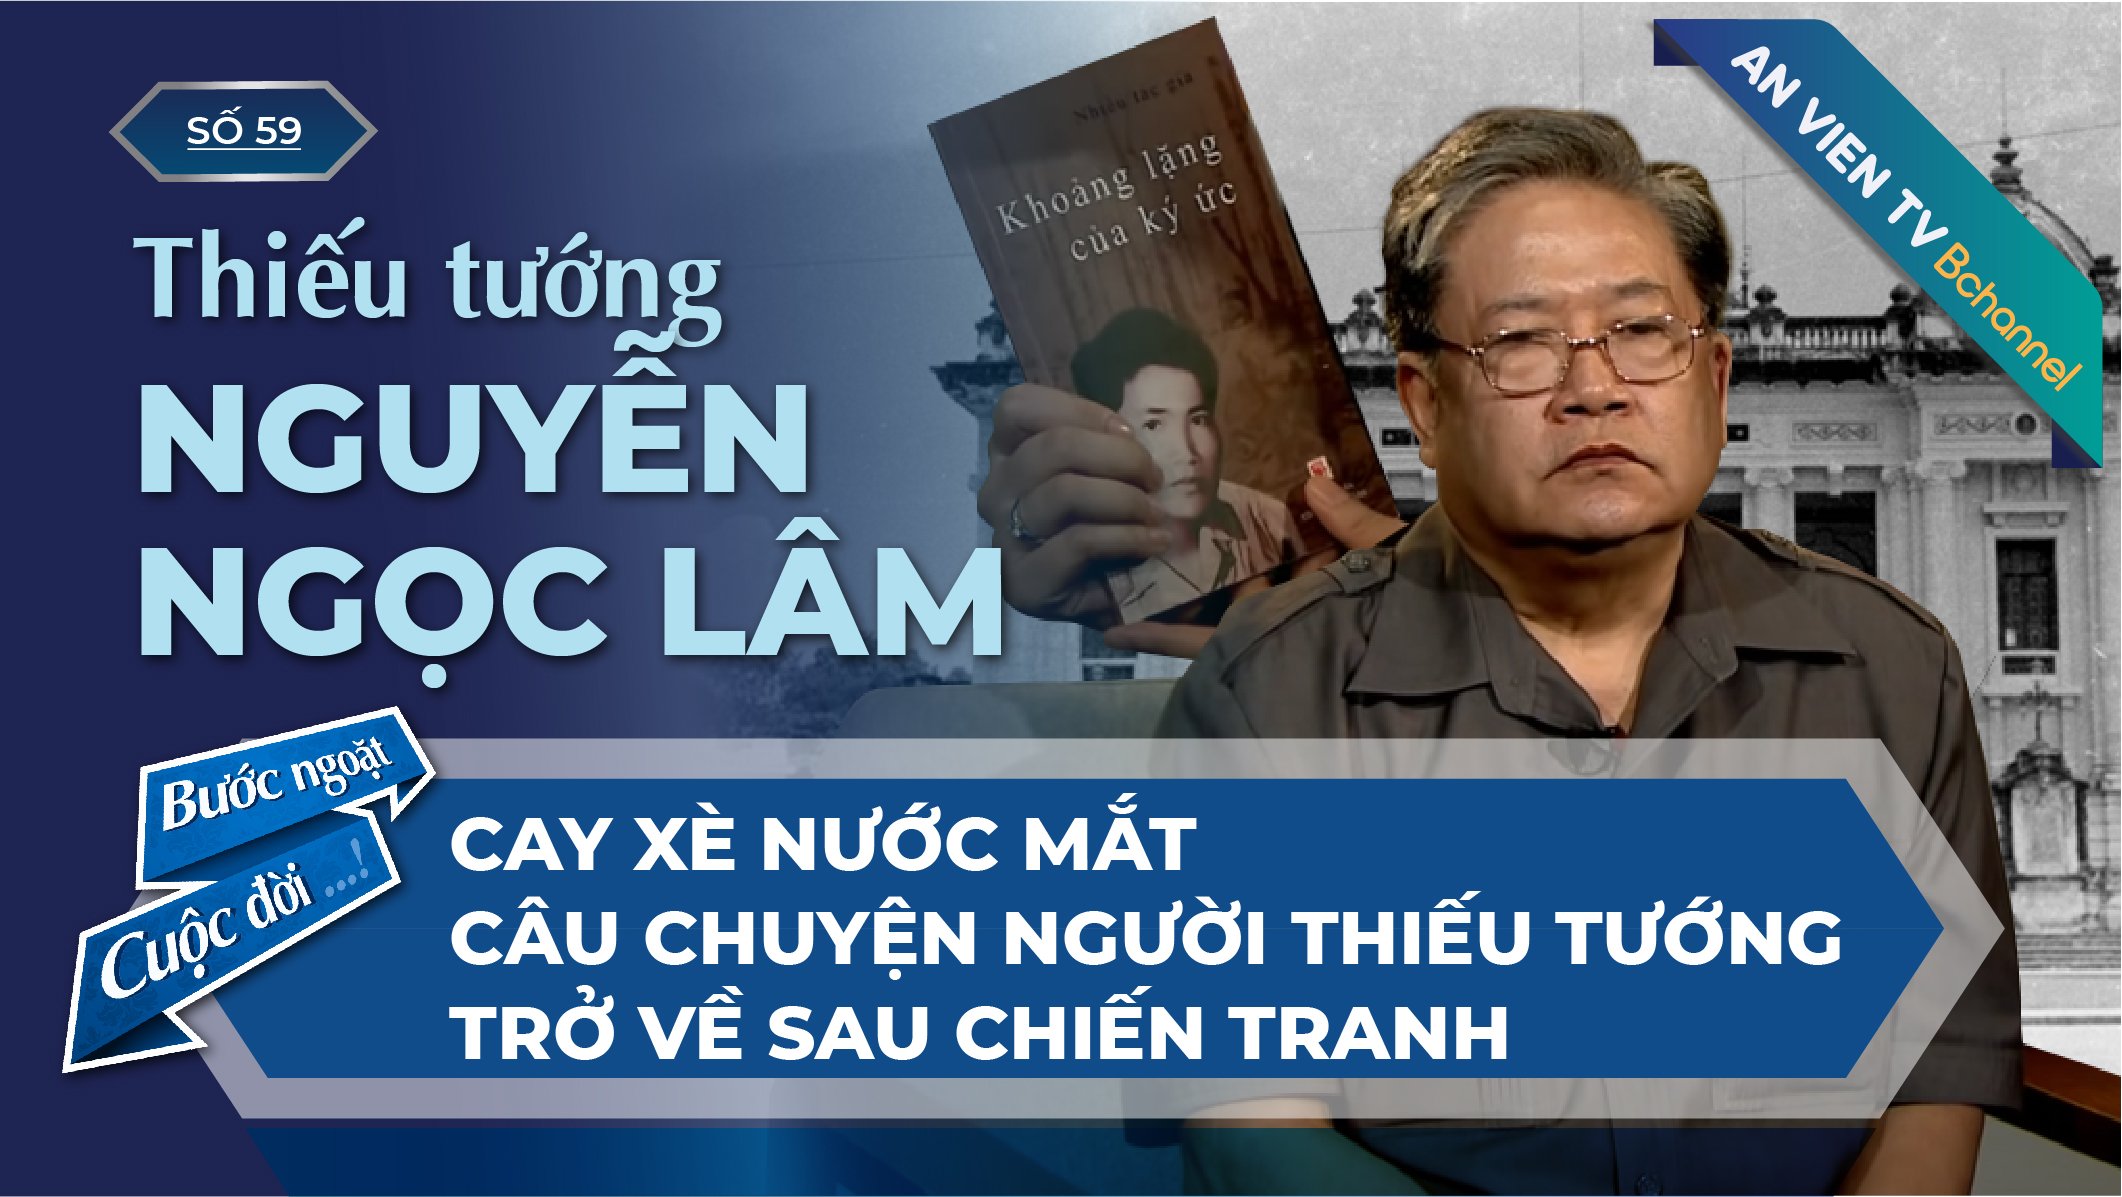 Thiếu tướng Nguyễn Ngọc Lâm: Câu chuyện về người lính sau chiến tranh | Bước Ngoặt Cuộc Đời Số 59